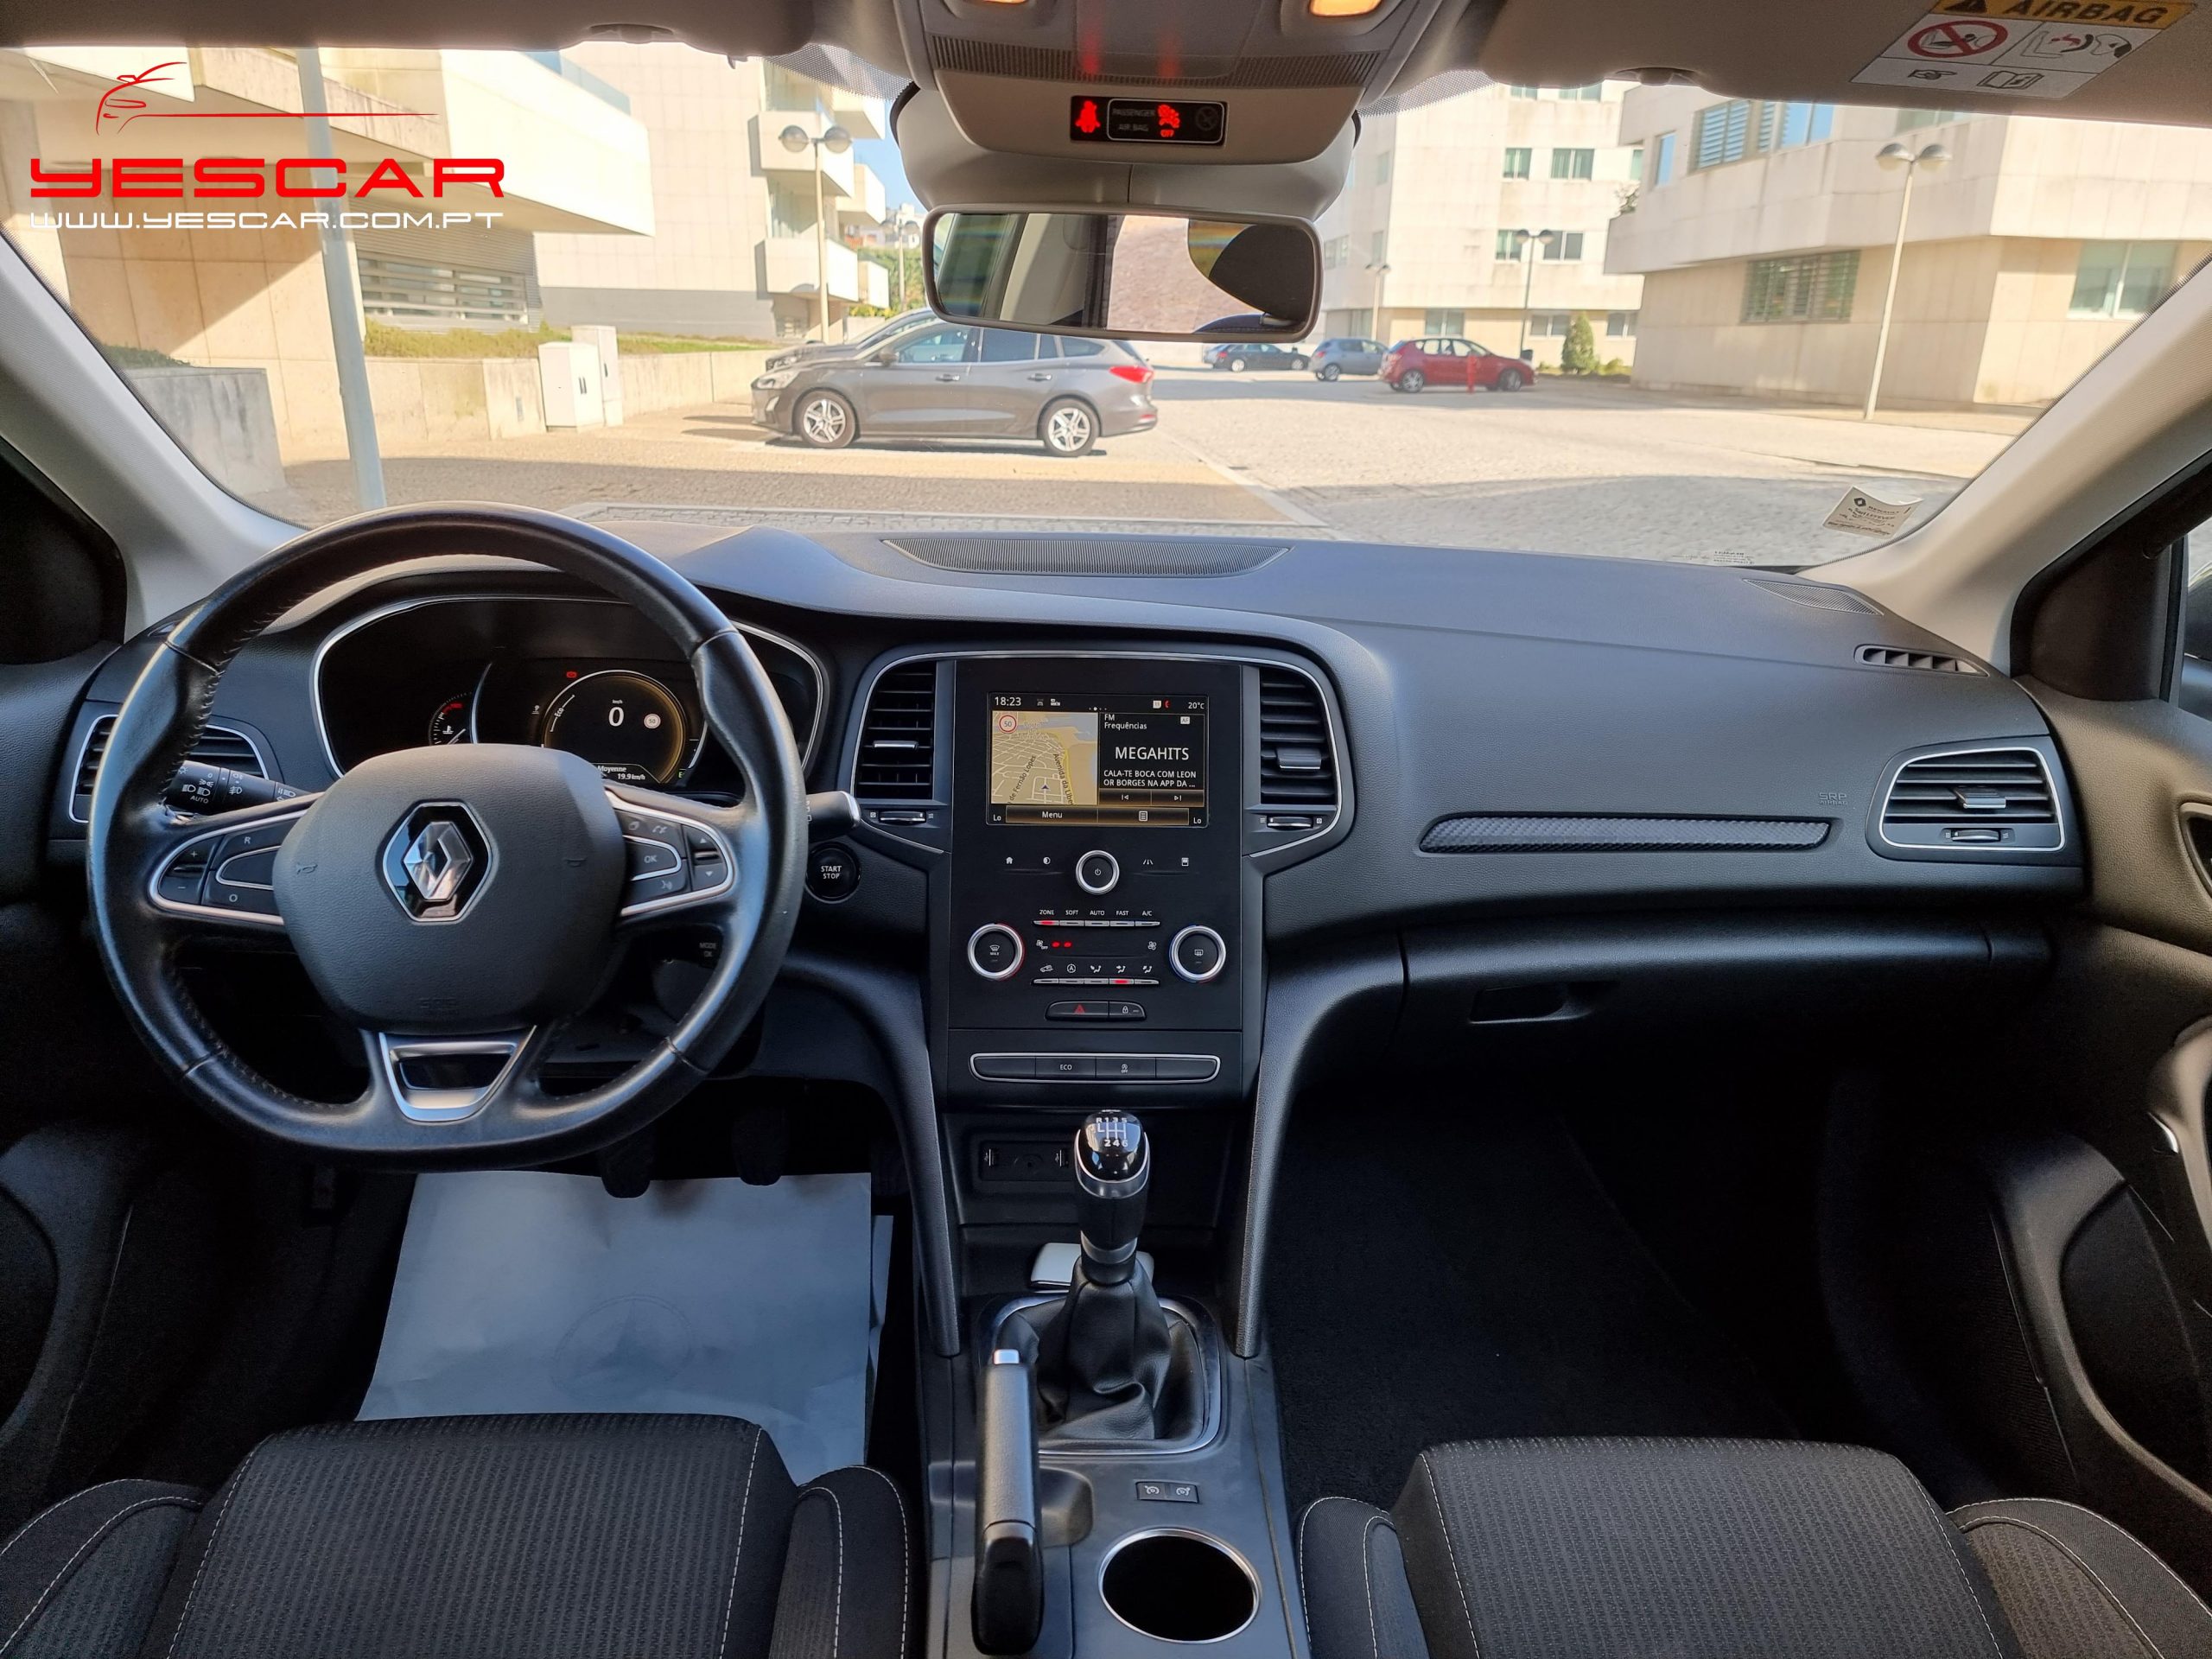 Renault Megane 5portas - YESCAR automoveis (39)